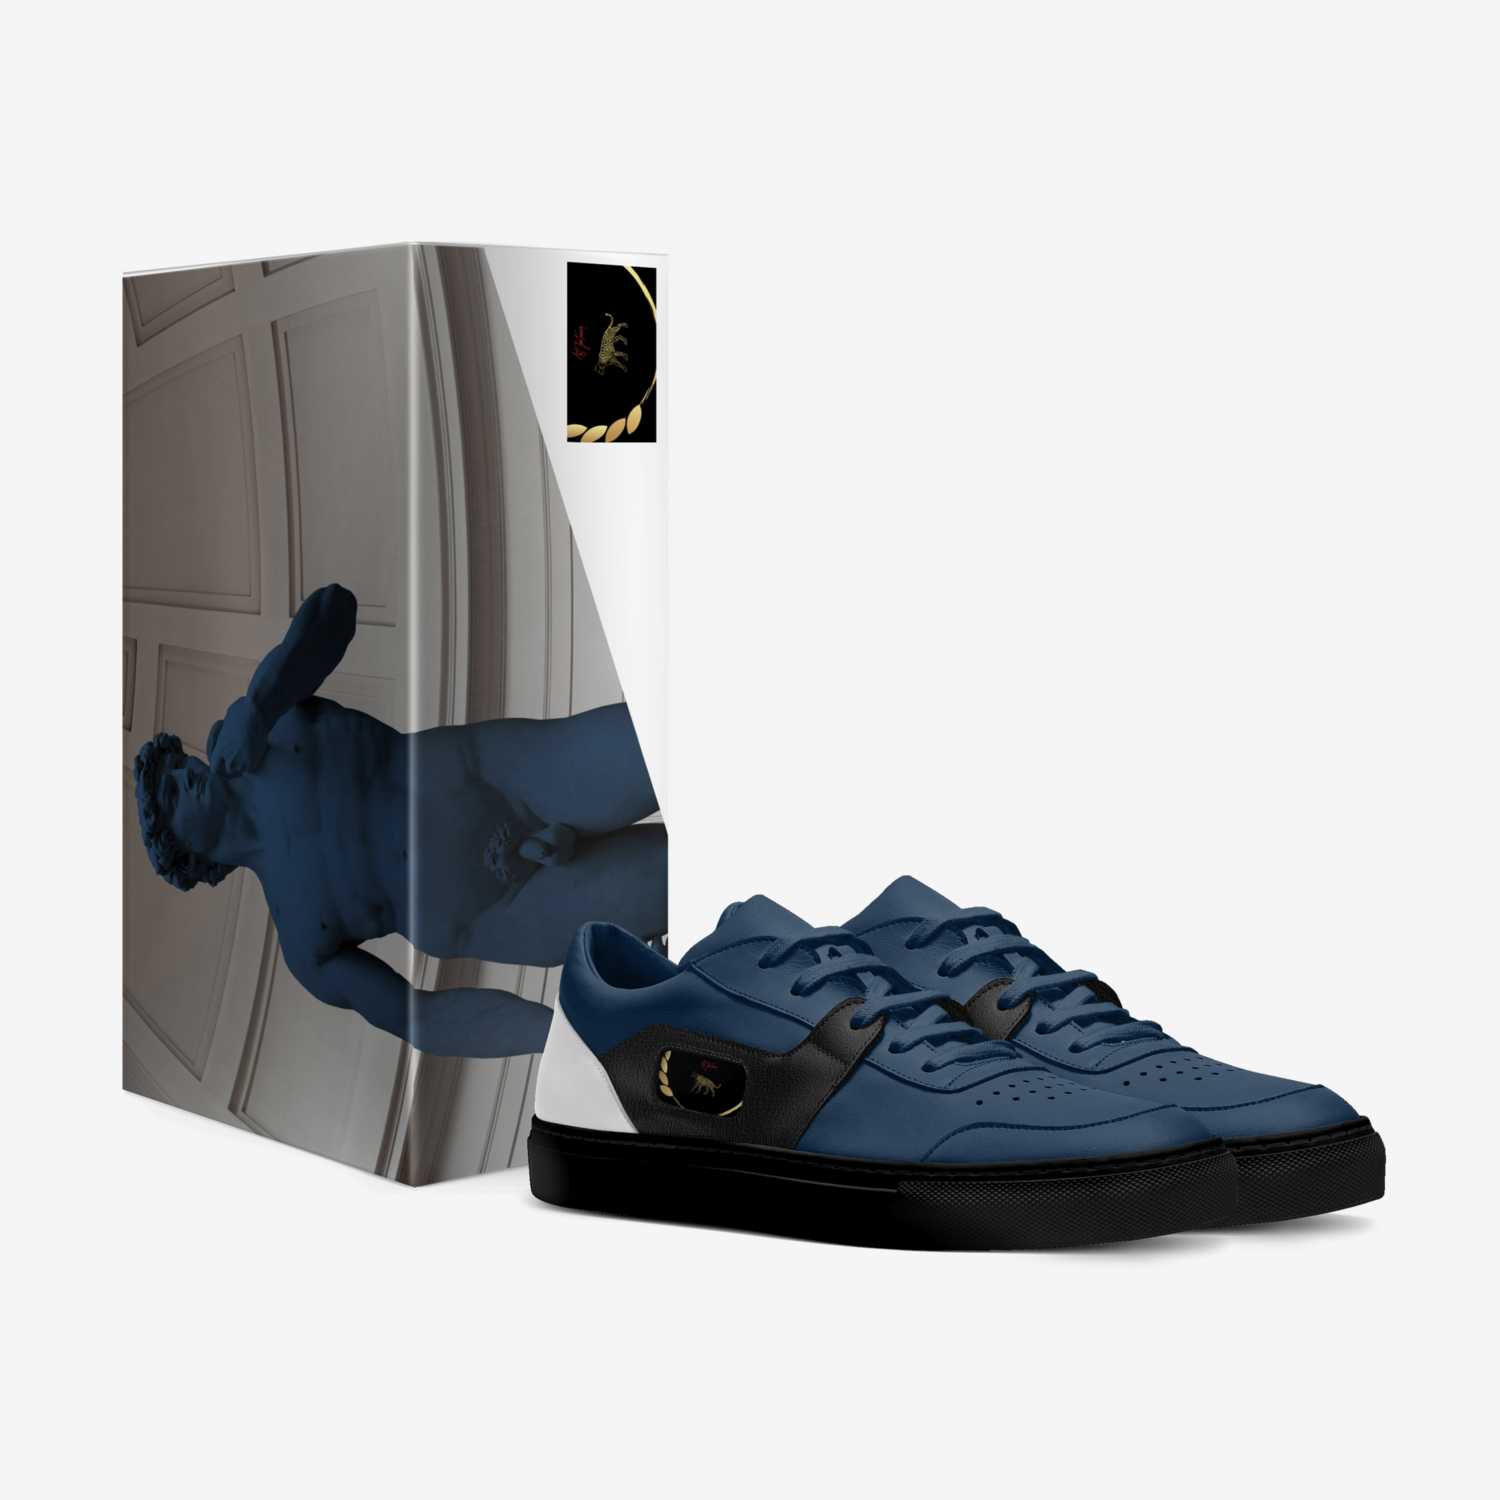  کافر custom made in Italy shoes by Nima Ghalandari | Box view